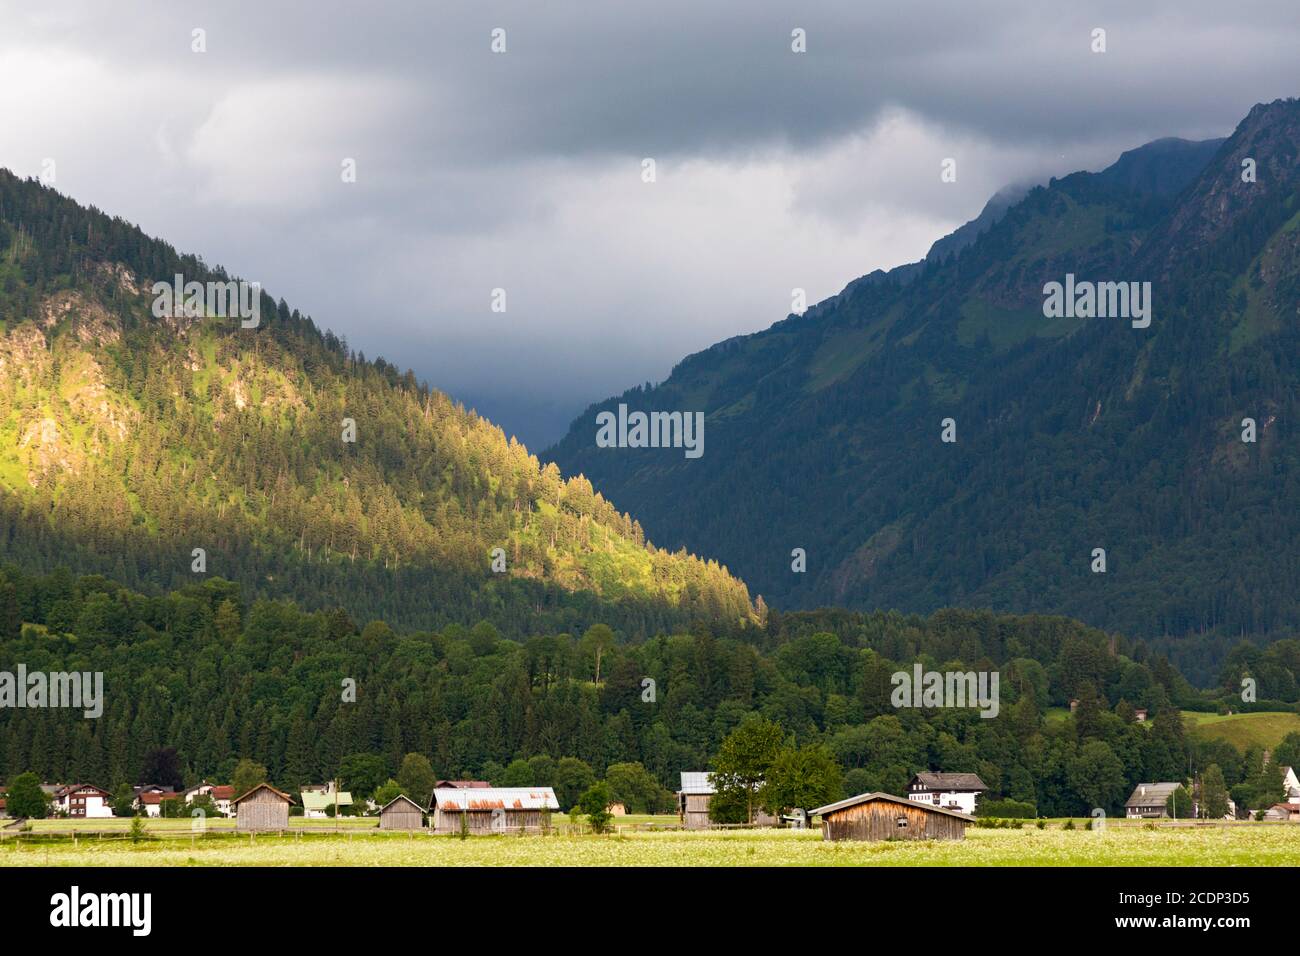 Scheune, Häuser, Sprungschanze, Bergen, tiefliegende Wolken Stock Photo